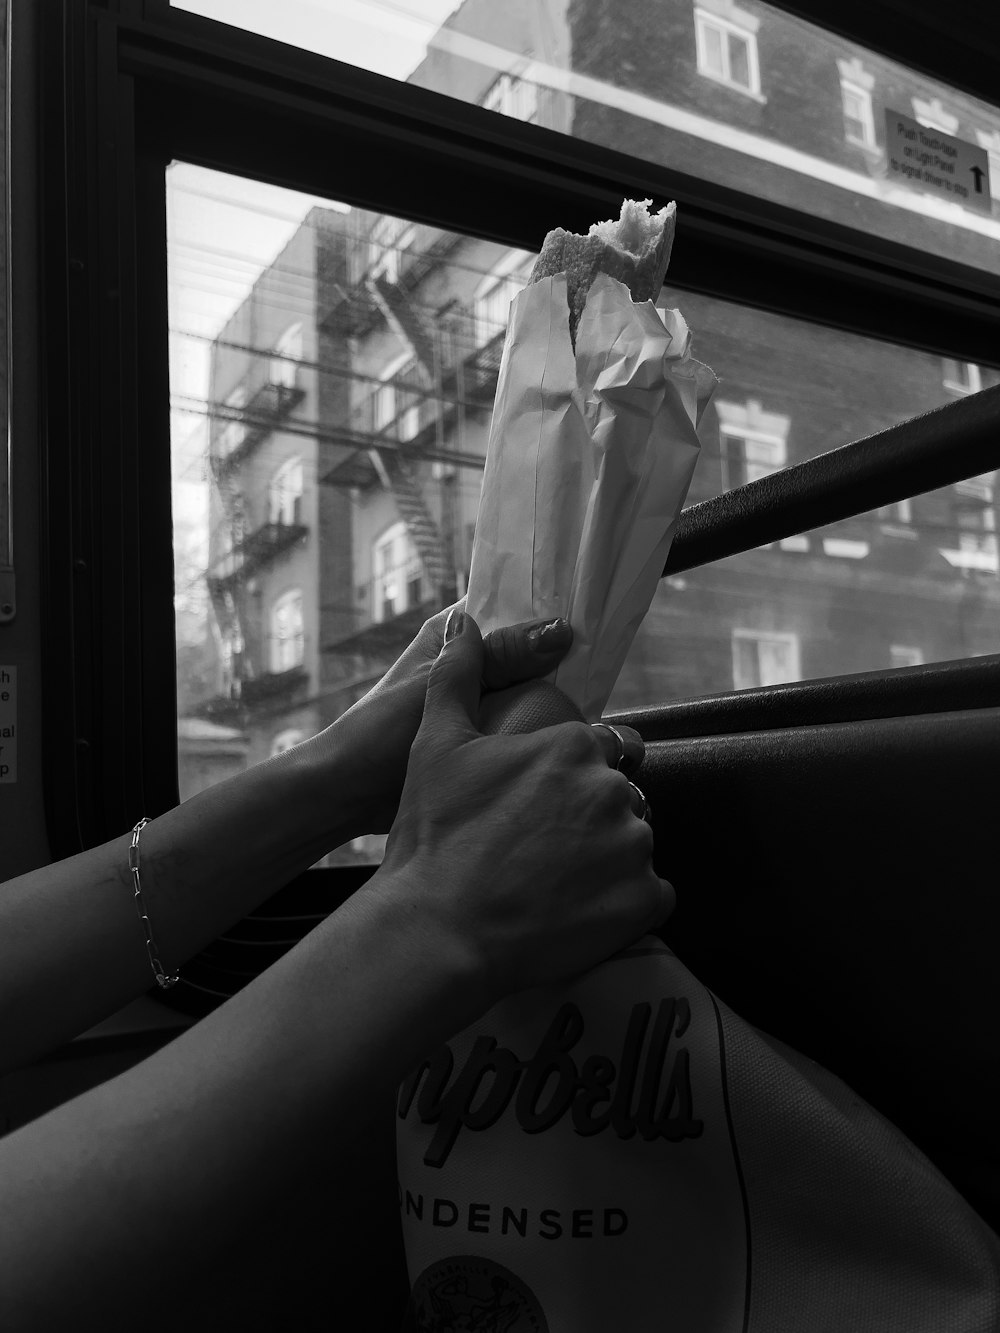 una persona che tiene in mano un sacchetto di carta su un autobus